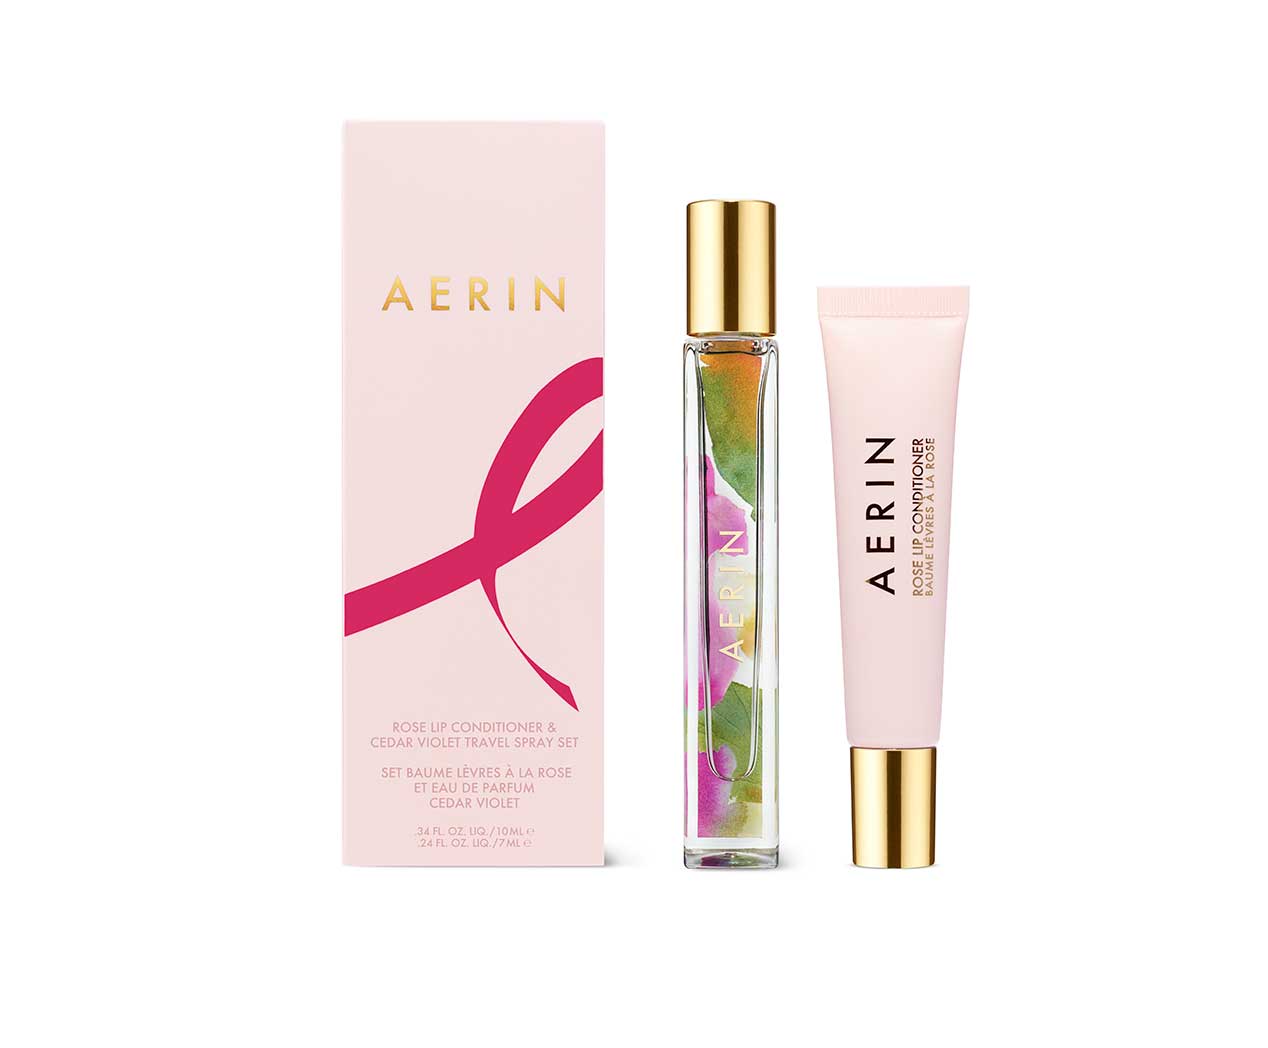 AERIN-Rose-Lip-Conditioner-_-Cedar-Violet-Travel-Spray-Set.jpg